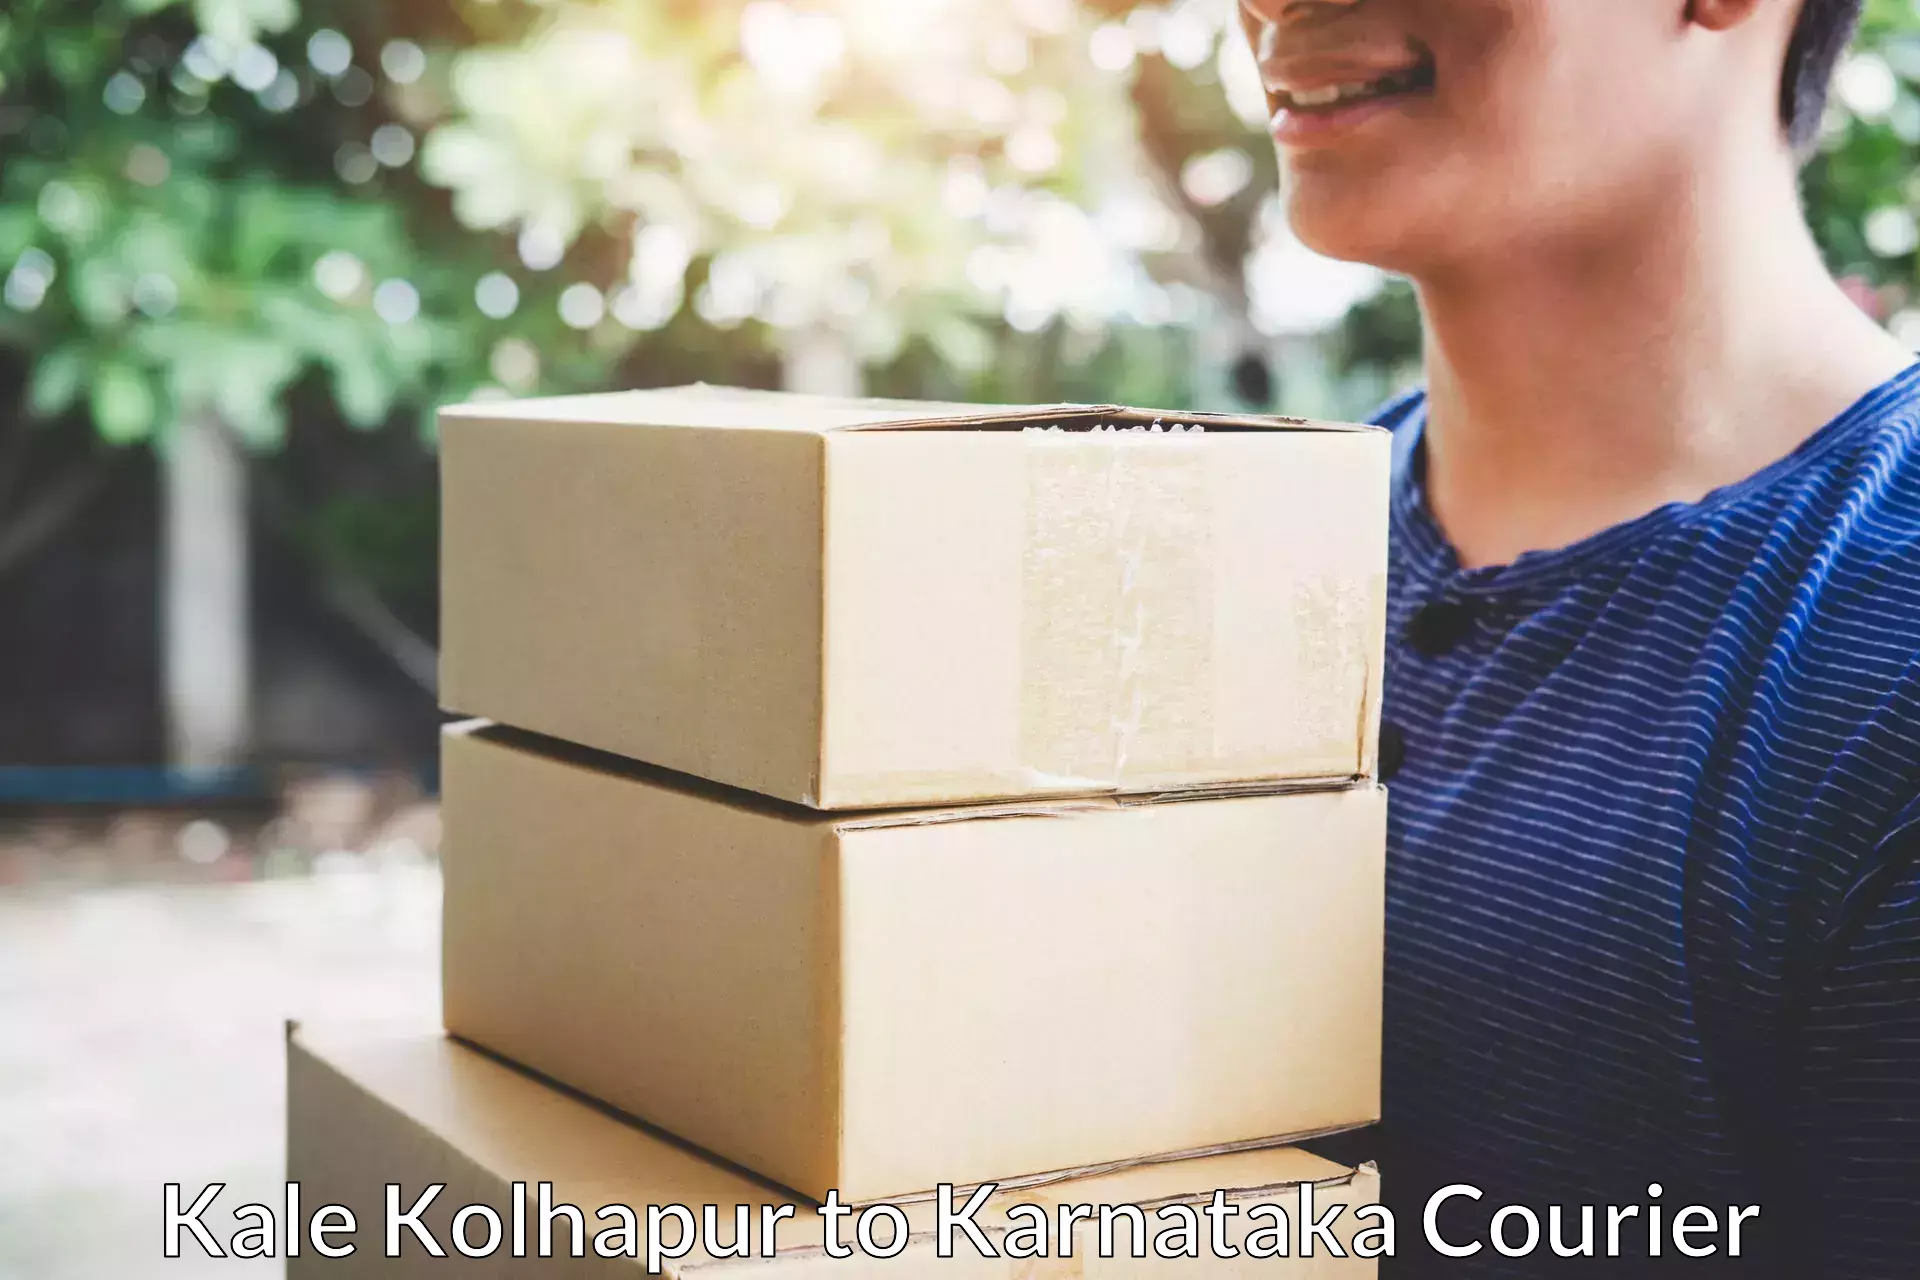 Professional home shifting in Kale Kolhapur to Karnataka